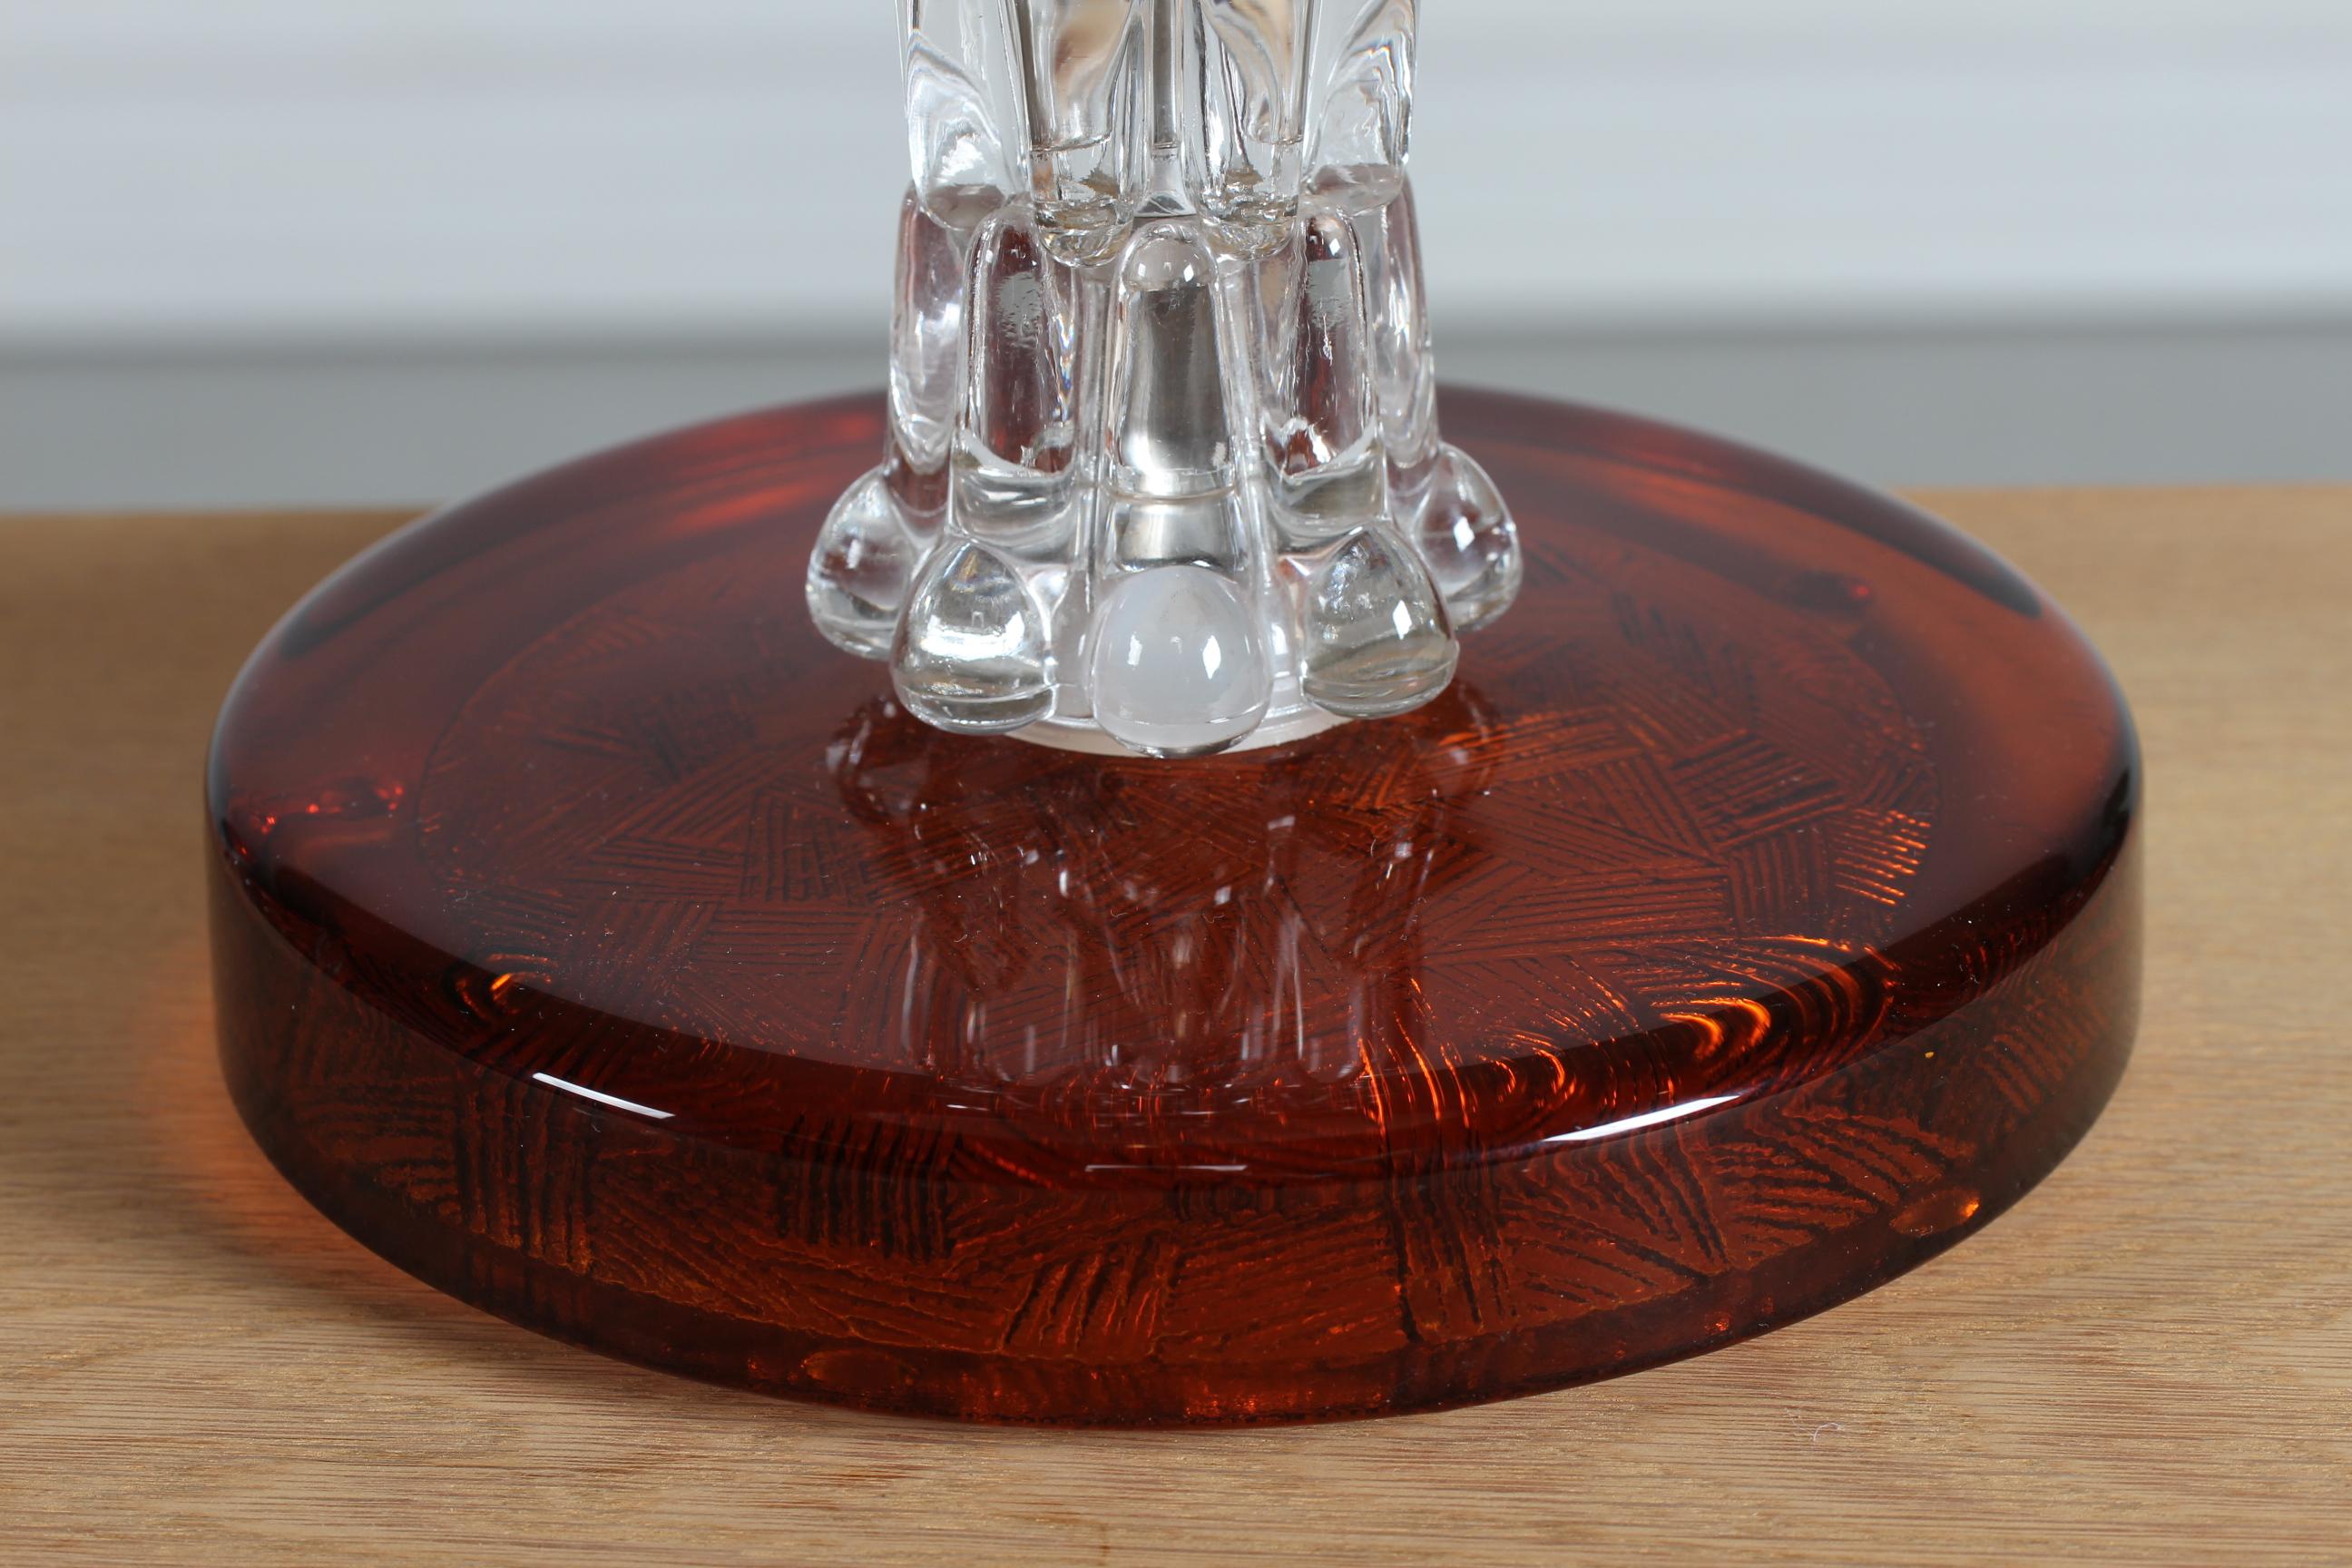 Sehr hohe Tisch- oder Stehleuchte von Carl Fagerlund, hergestellt von Orrefors in den 1960er Jahren. 

Der spektakuläre Lampenfuß ist aus klarem und bernsteinfarbenem Glas in Schichten gefertigt.
Dazu gehört auch ein neuer, in Dänemark